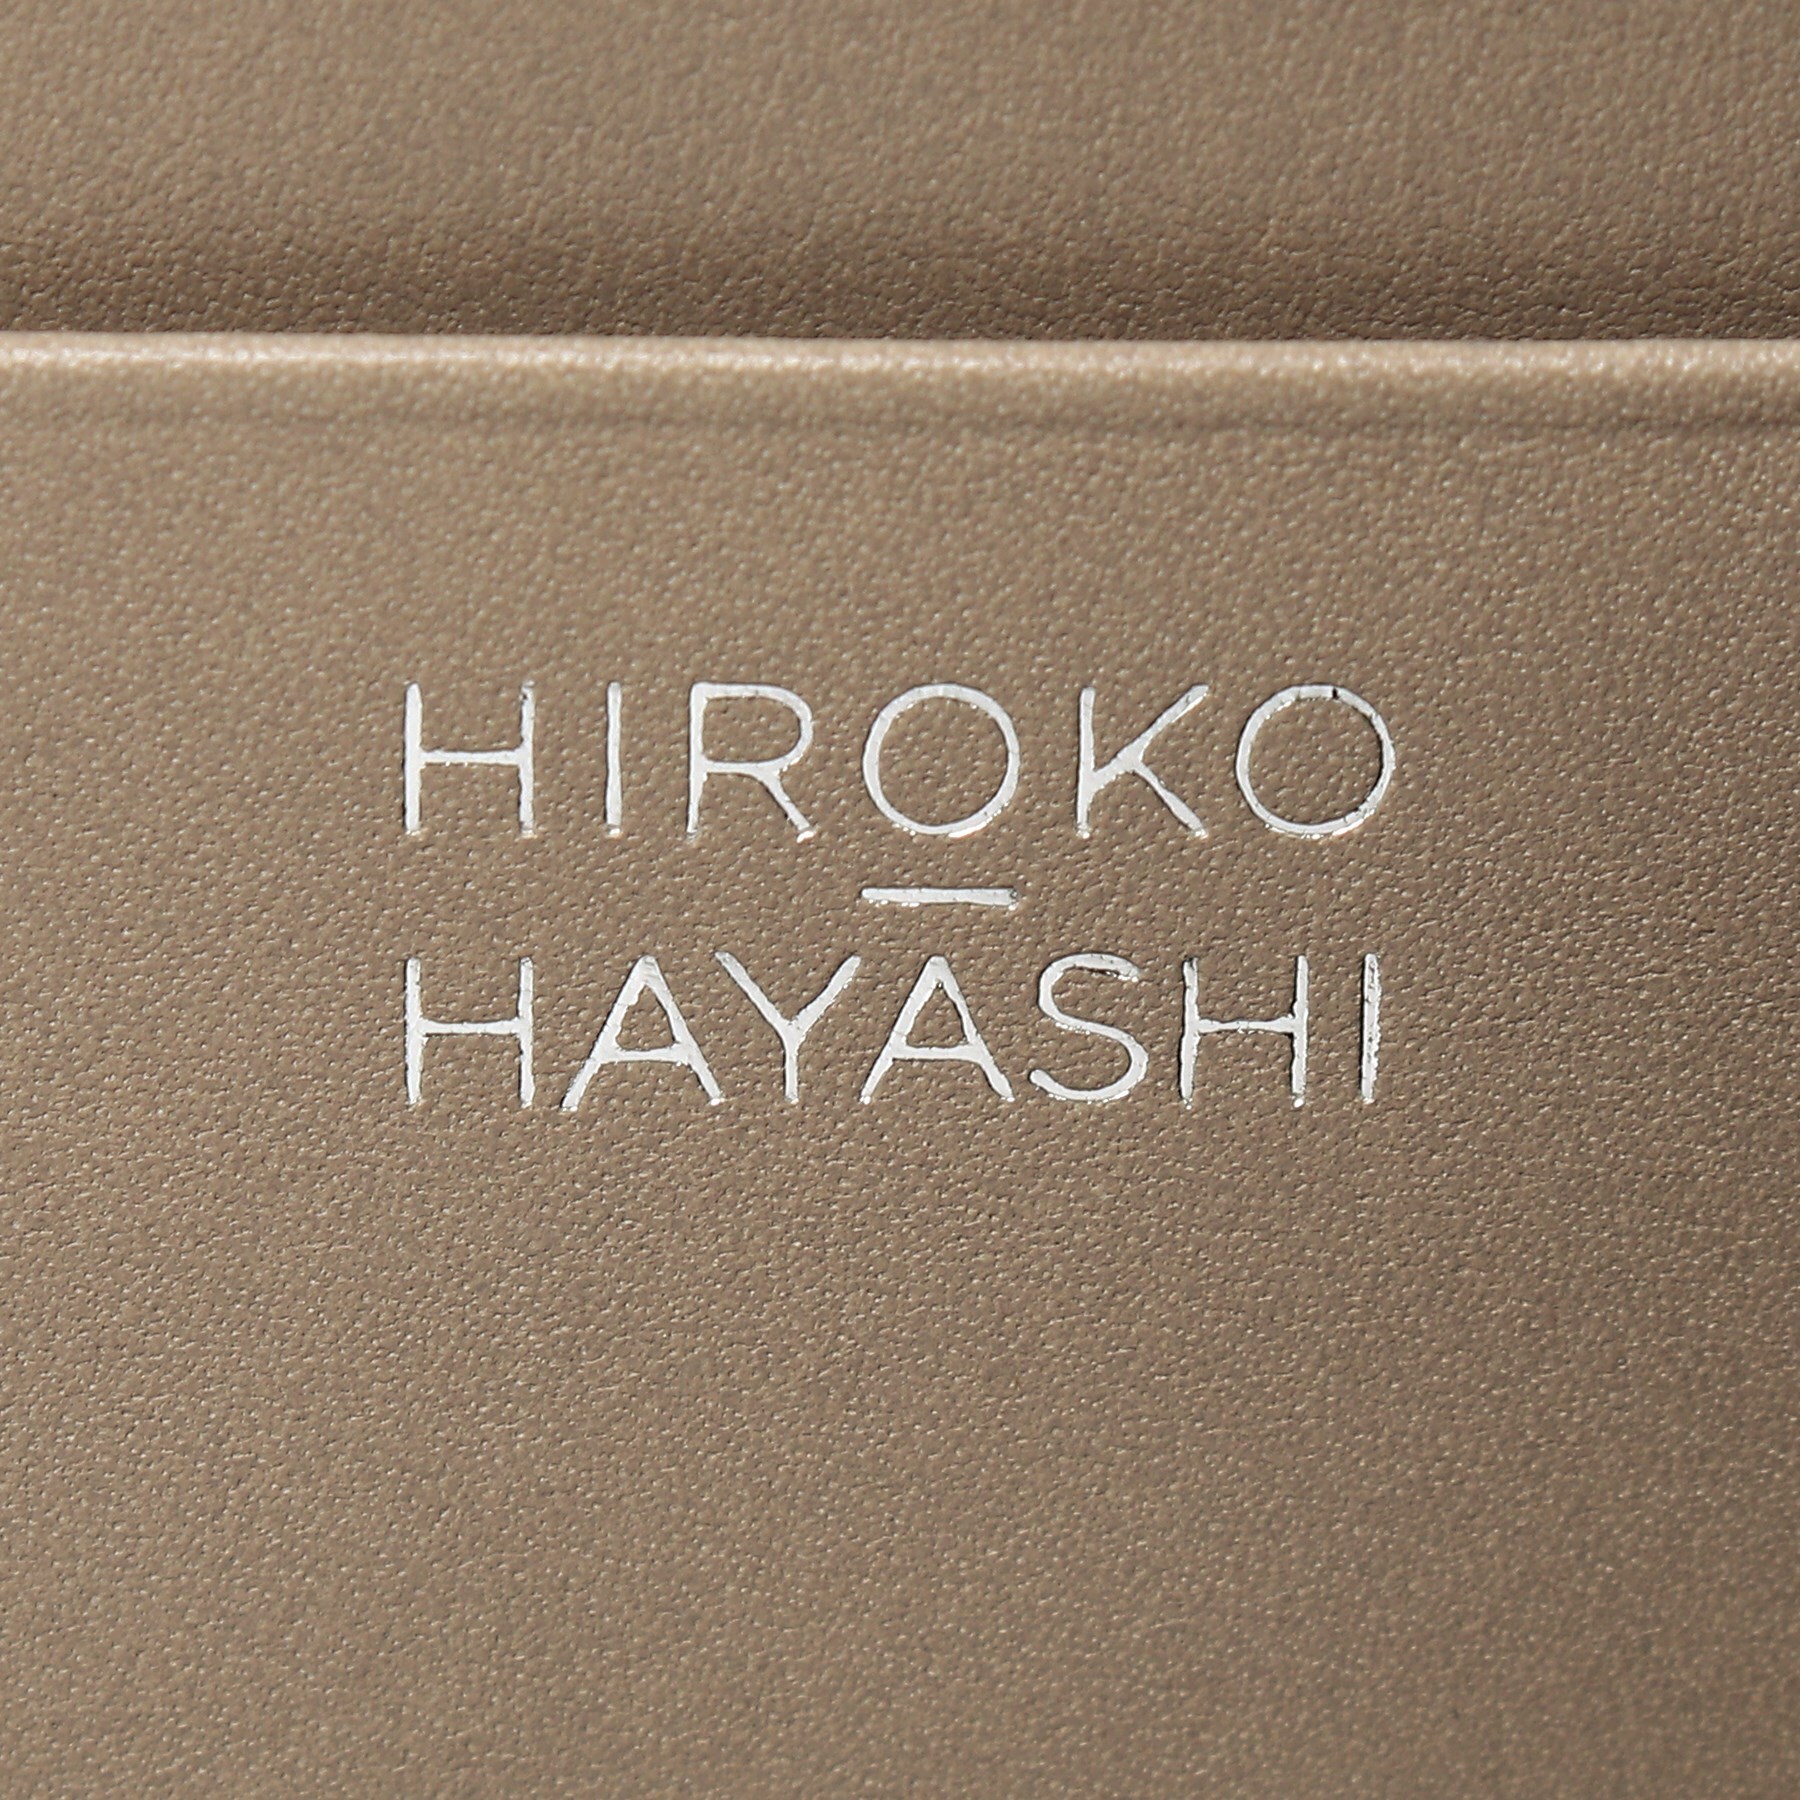 ヒロコ ハヤシ(HIROKO HAYASHI)のCORSO(コルソ)長財布9